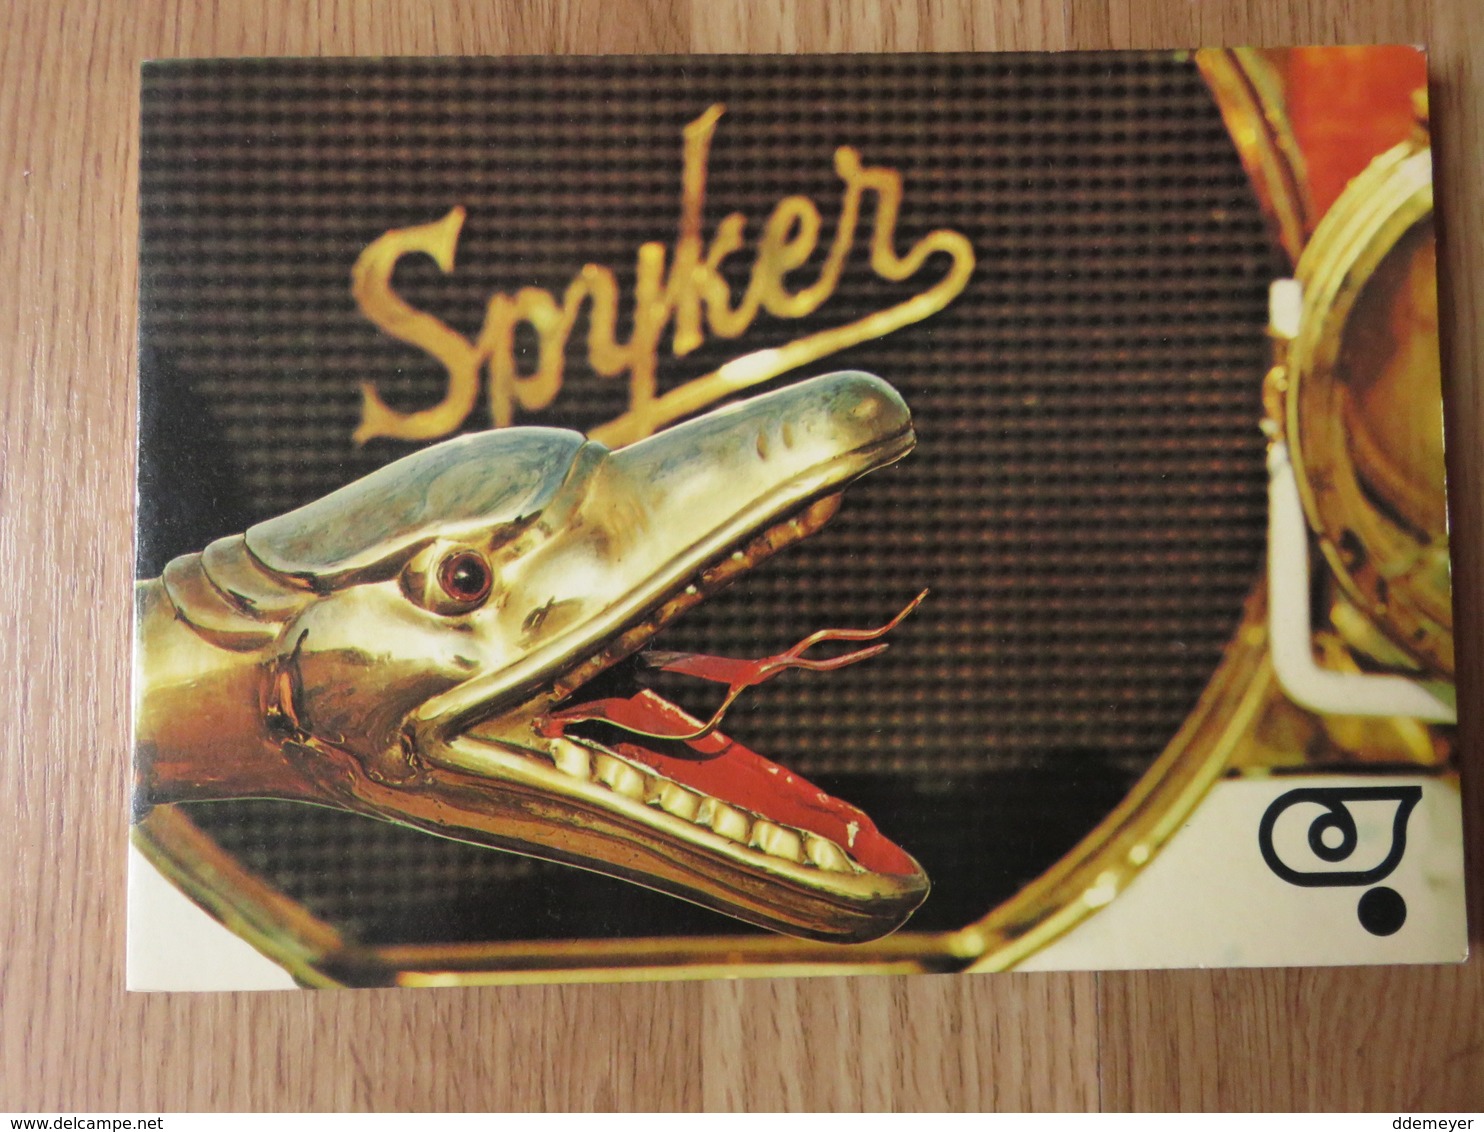 Spyker Auto H.C. Ebeling Lips Autotron 81blz - Sachbücher